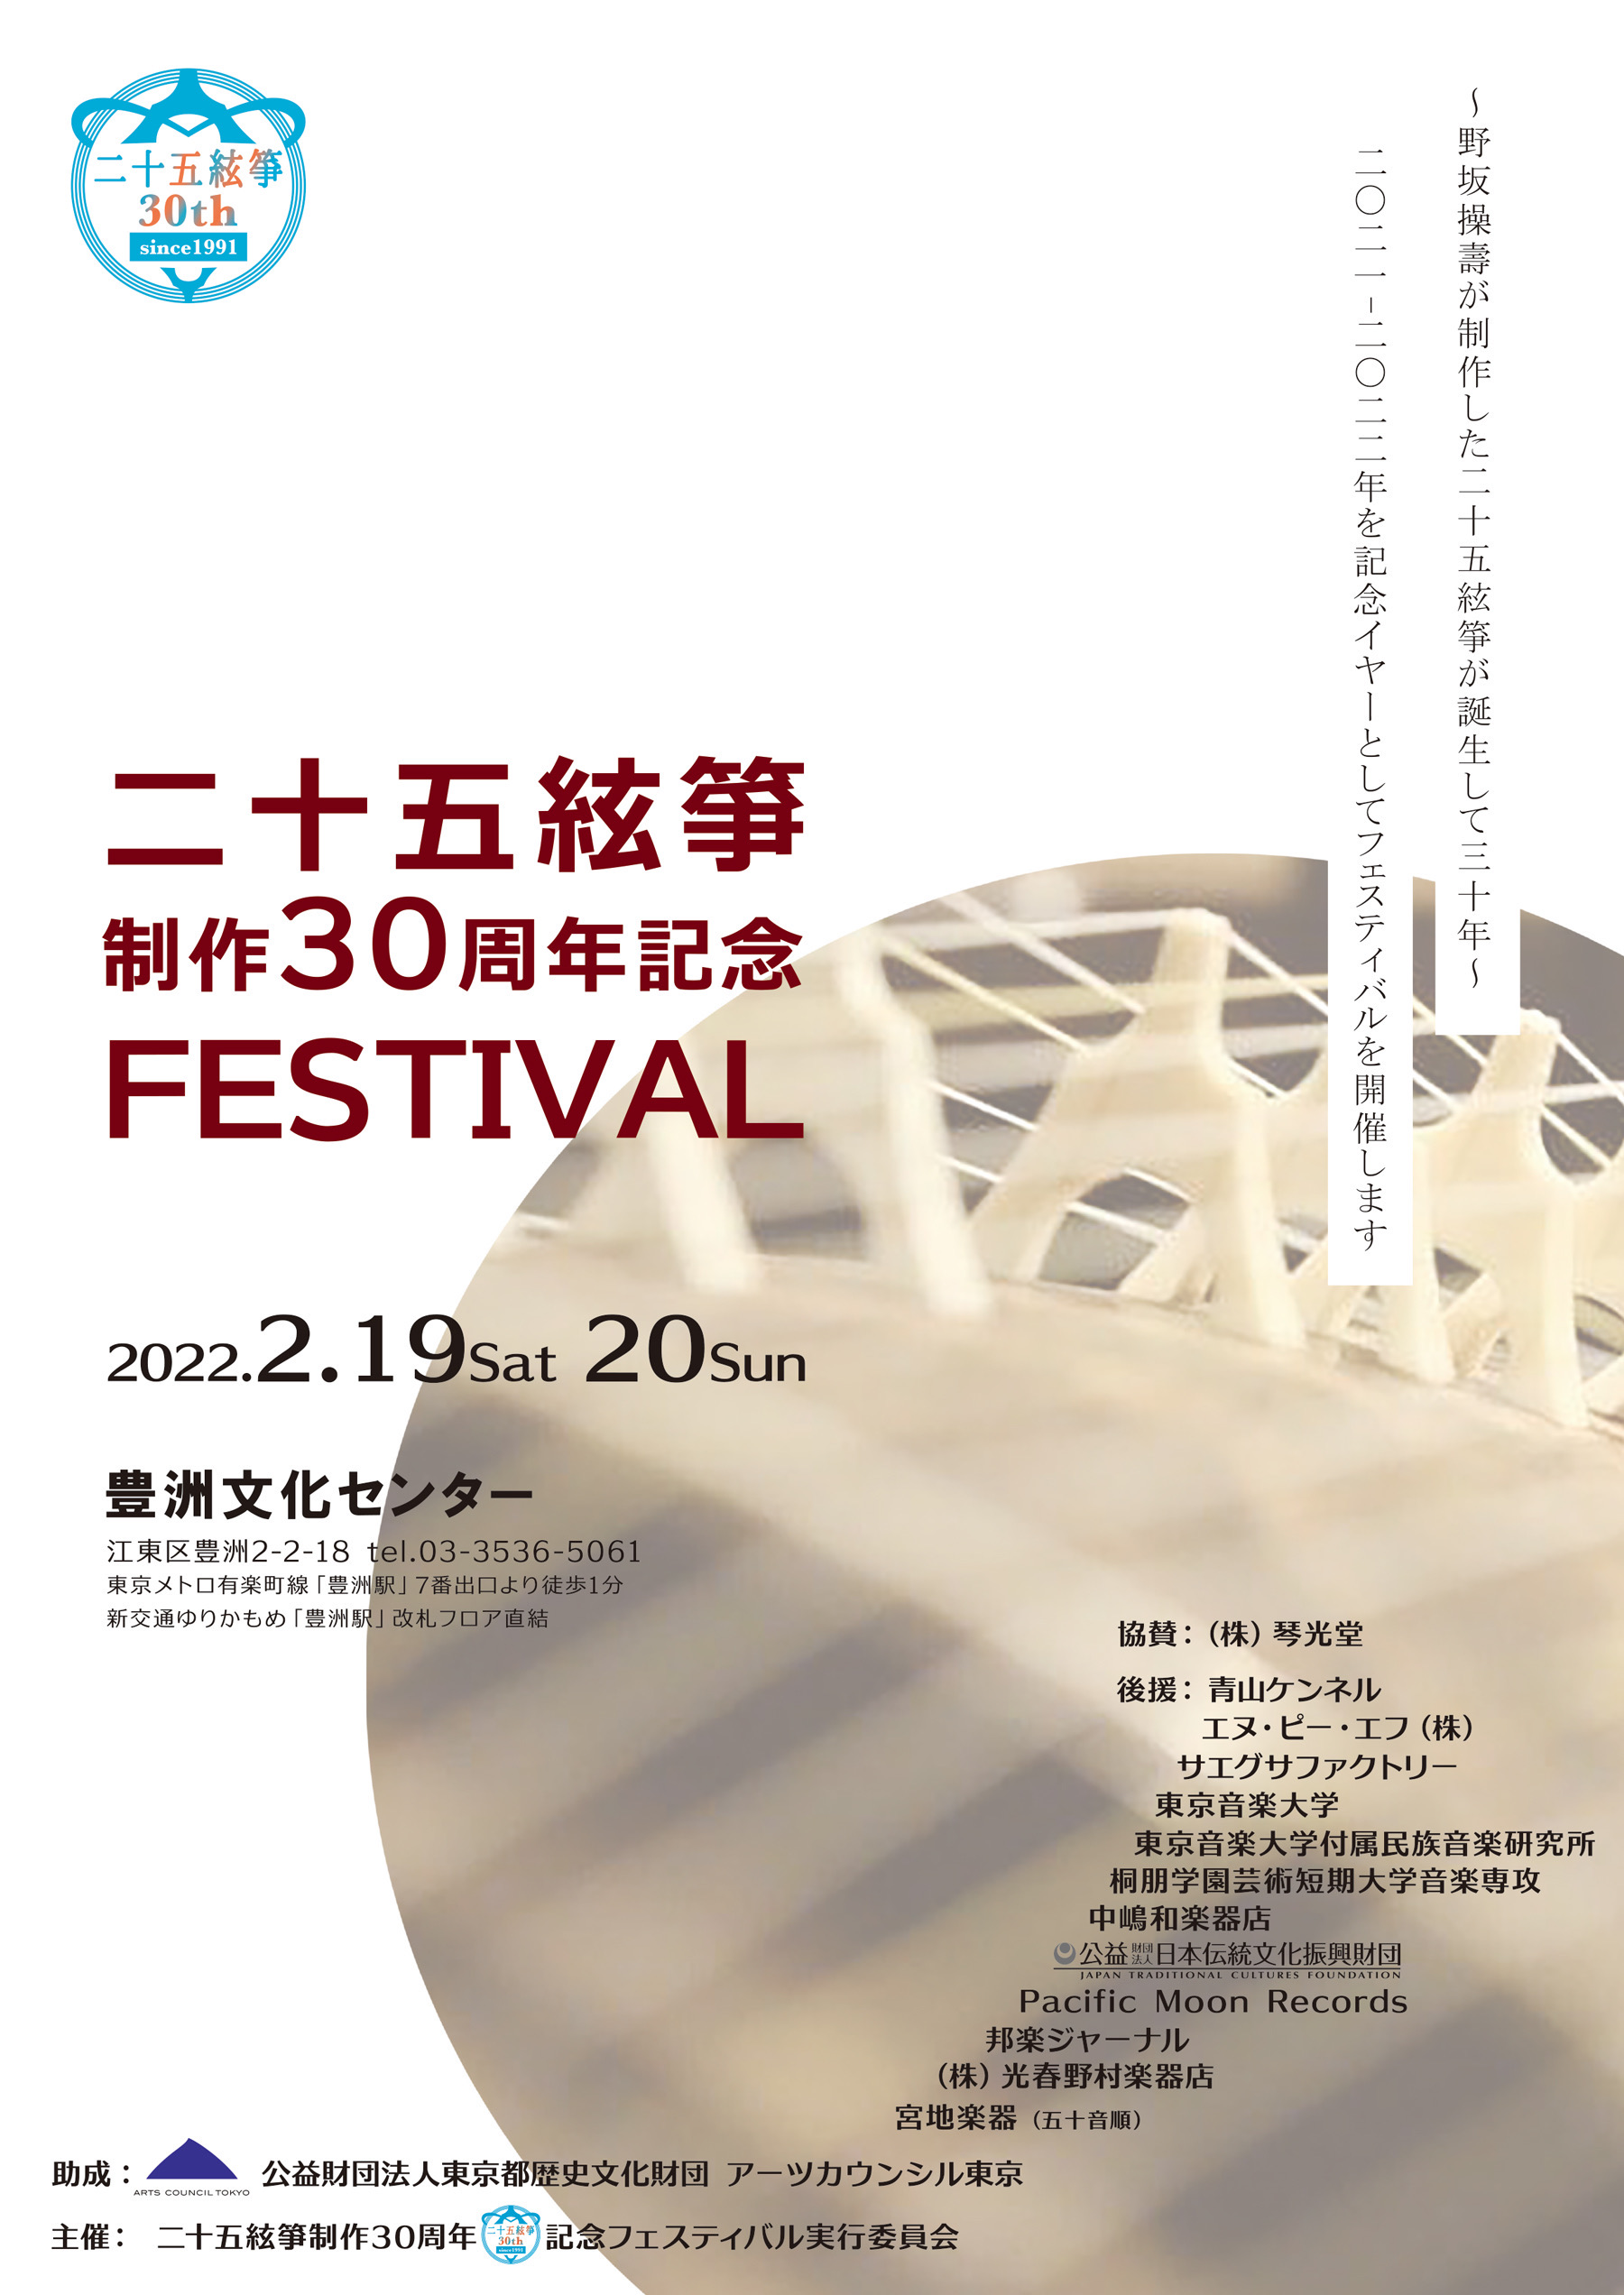 2/20 二十五絃箏制作30周年記念フェスティバル